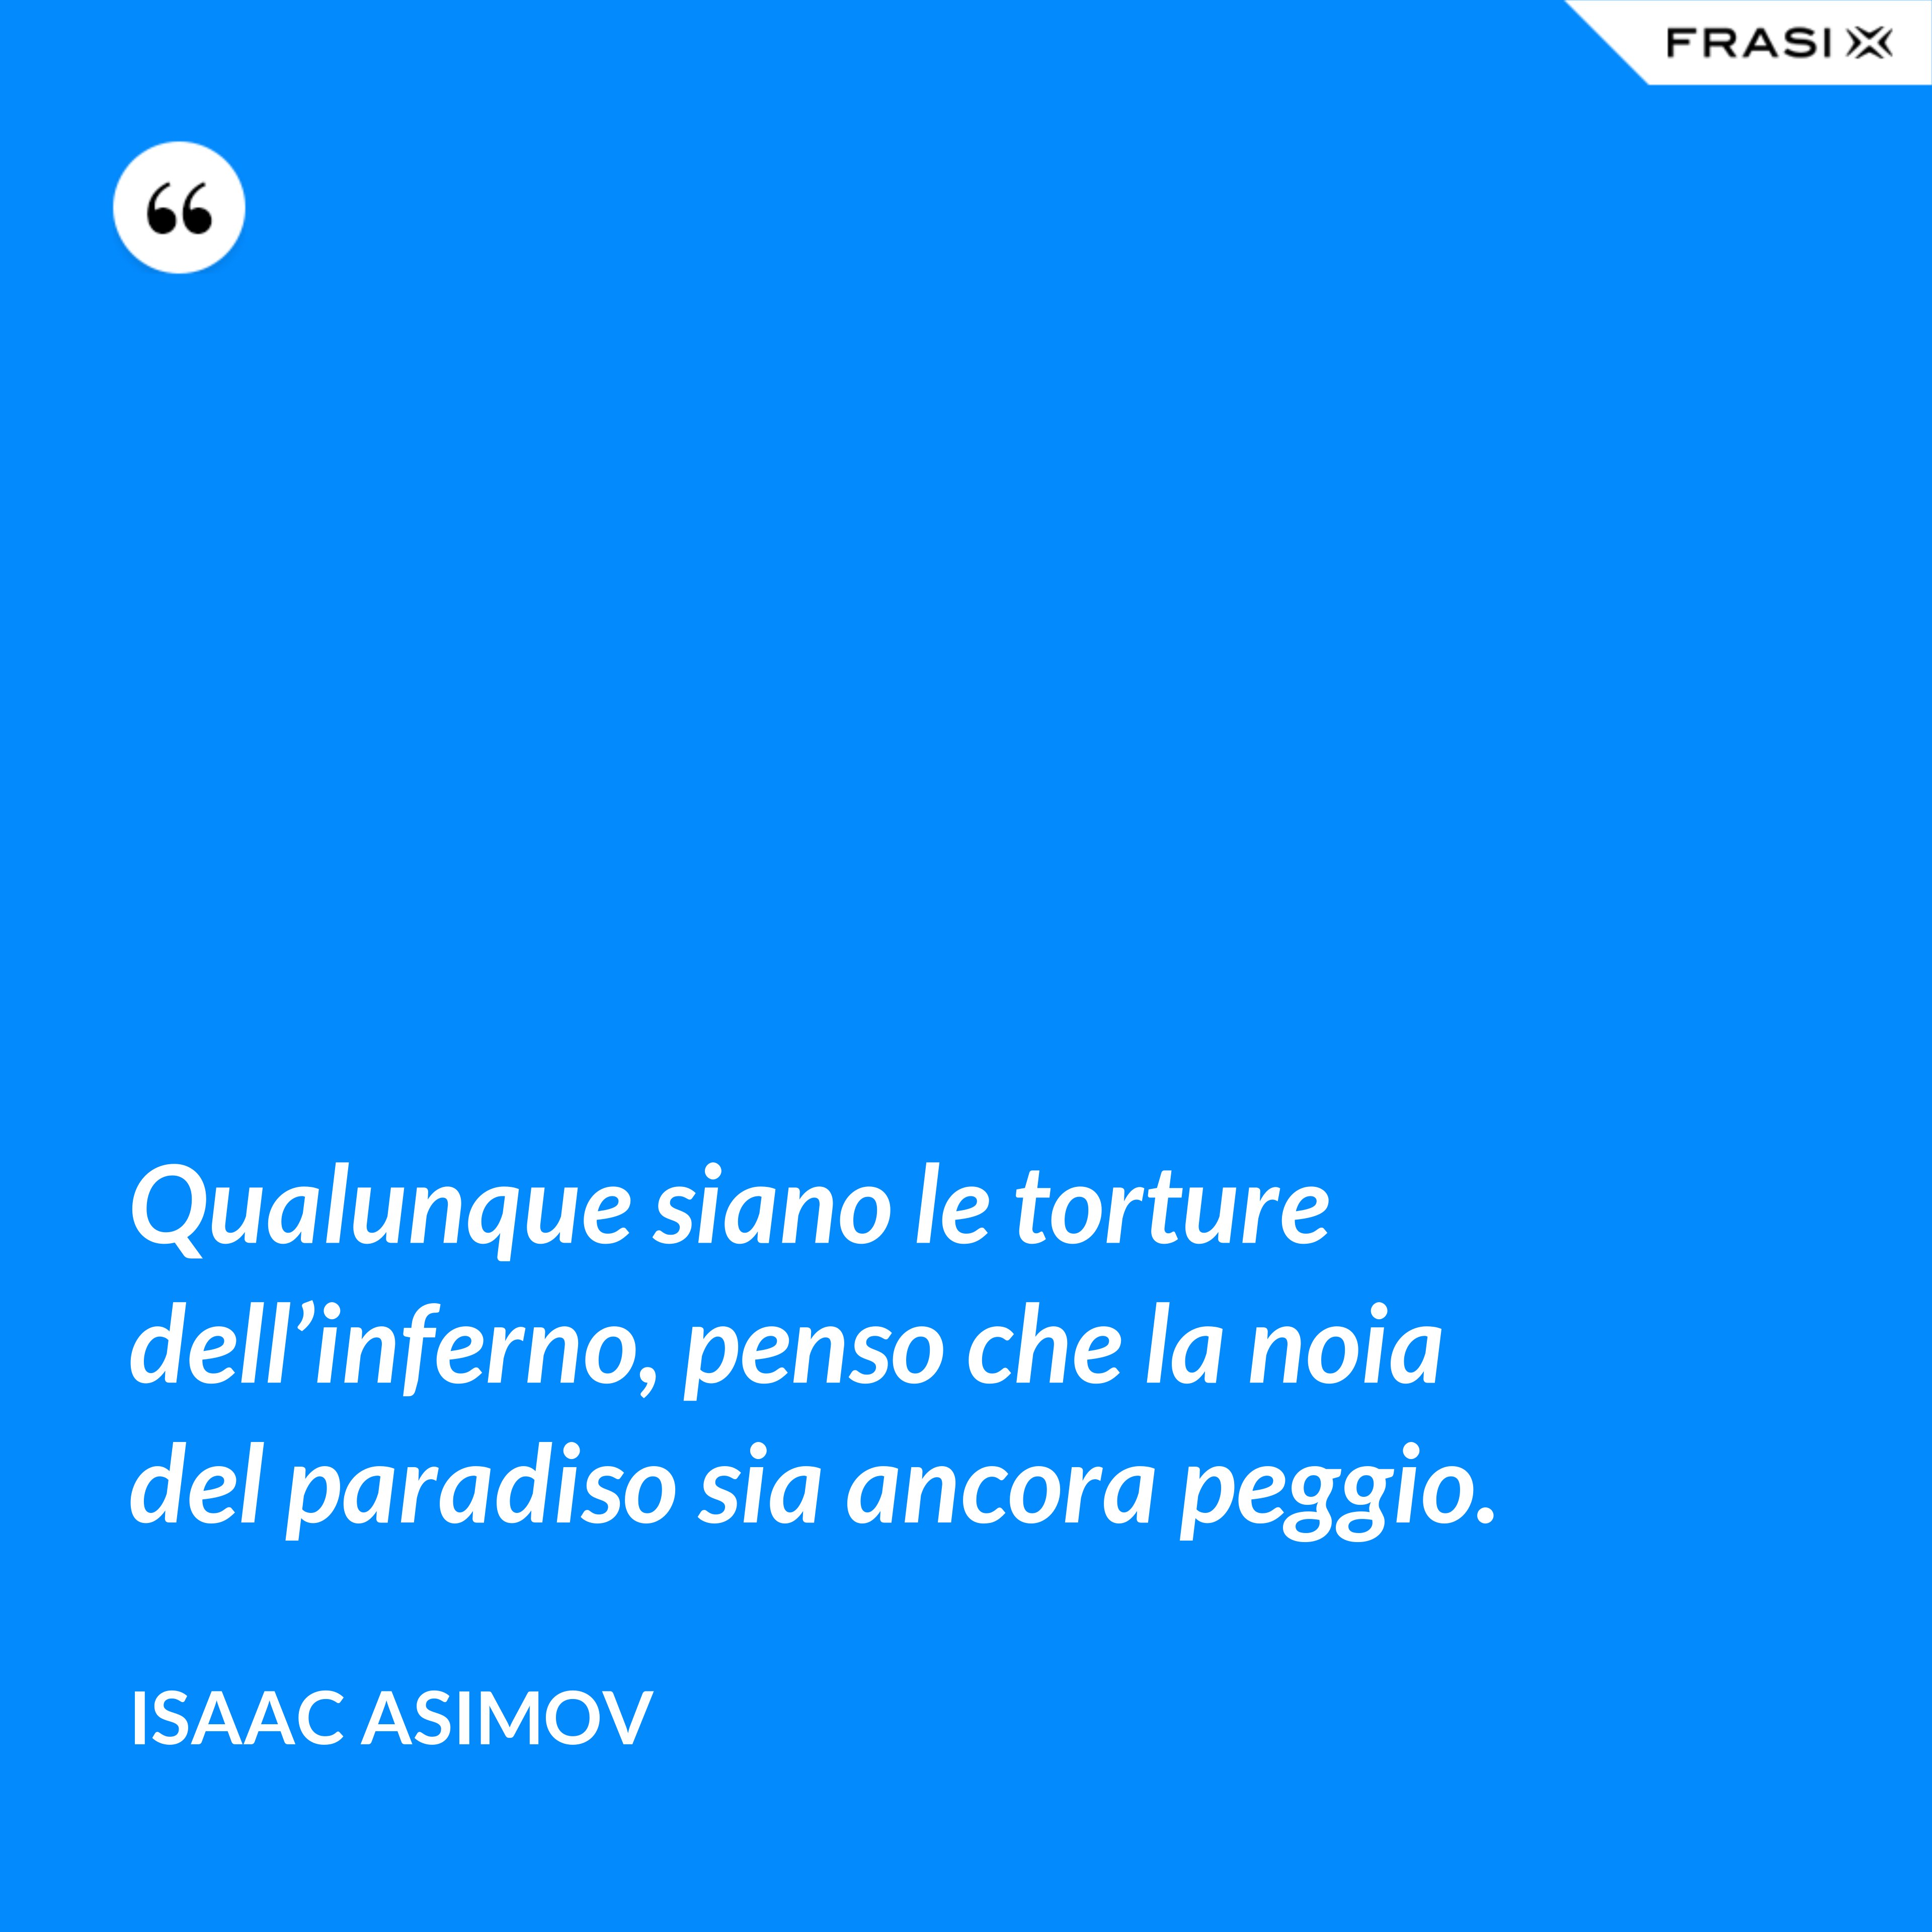 Qualunque siano le torture dell’inferno, penso che la noia del paradiso sia ancora peggio. - Isaac Asimov